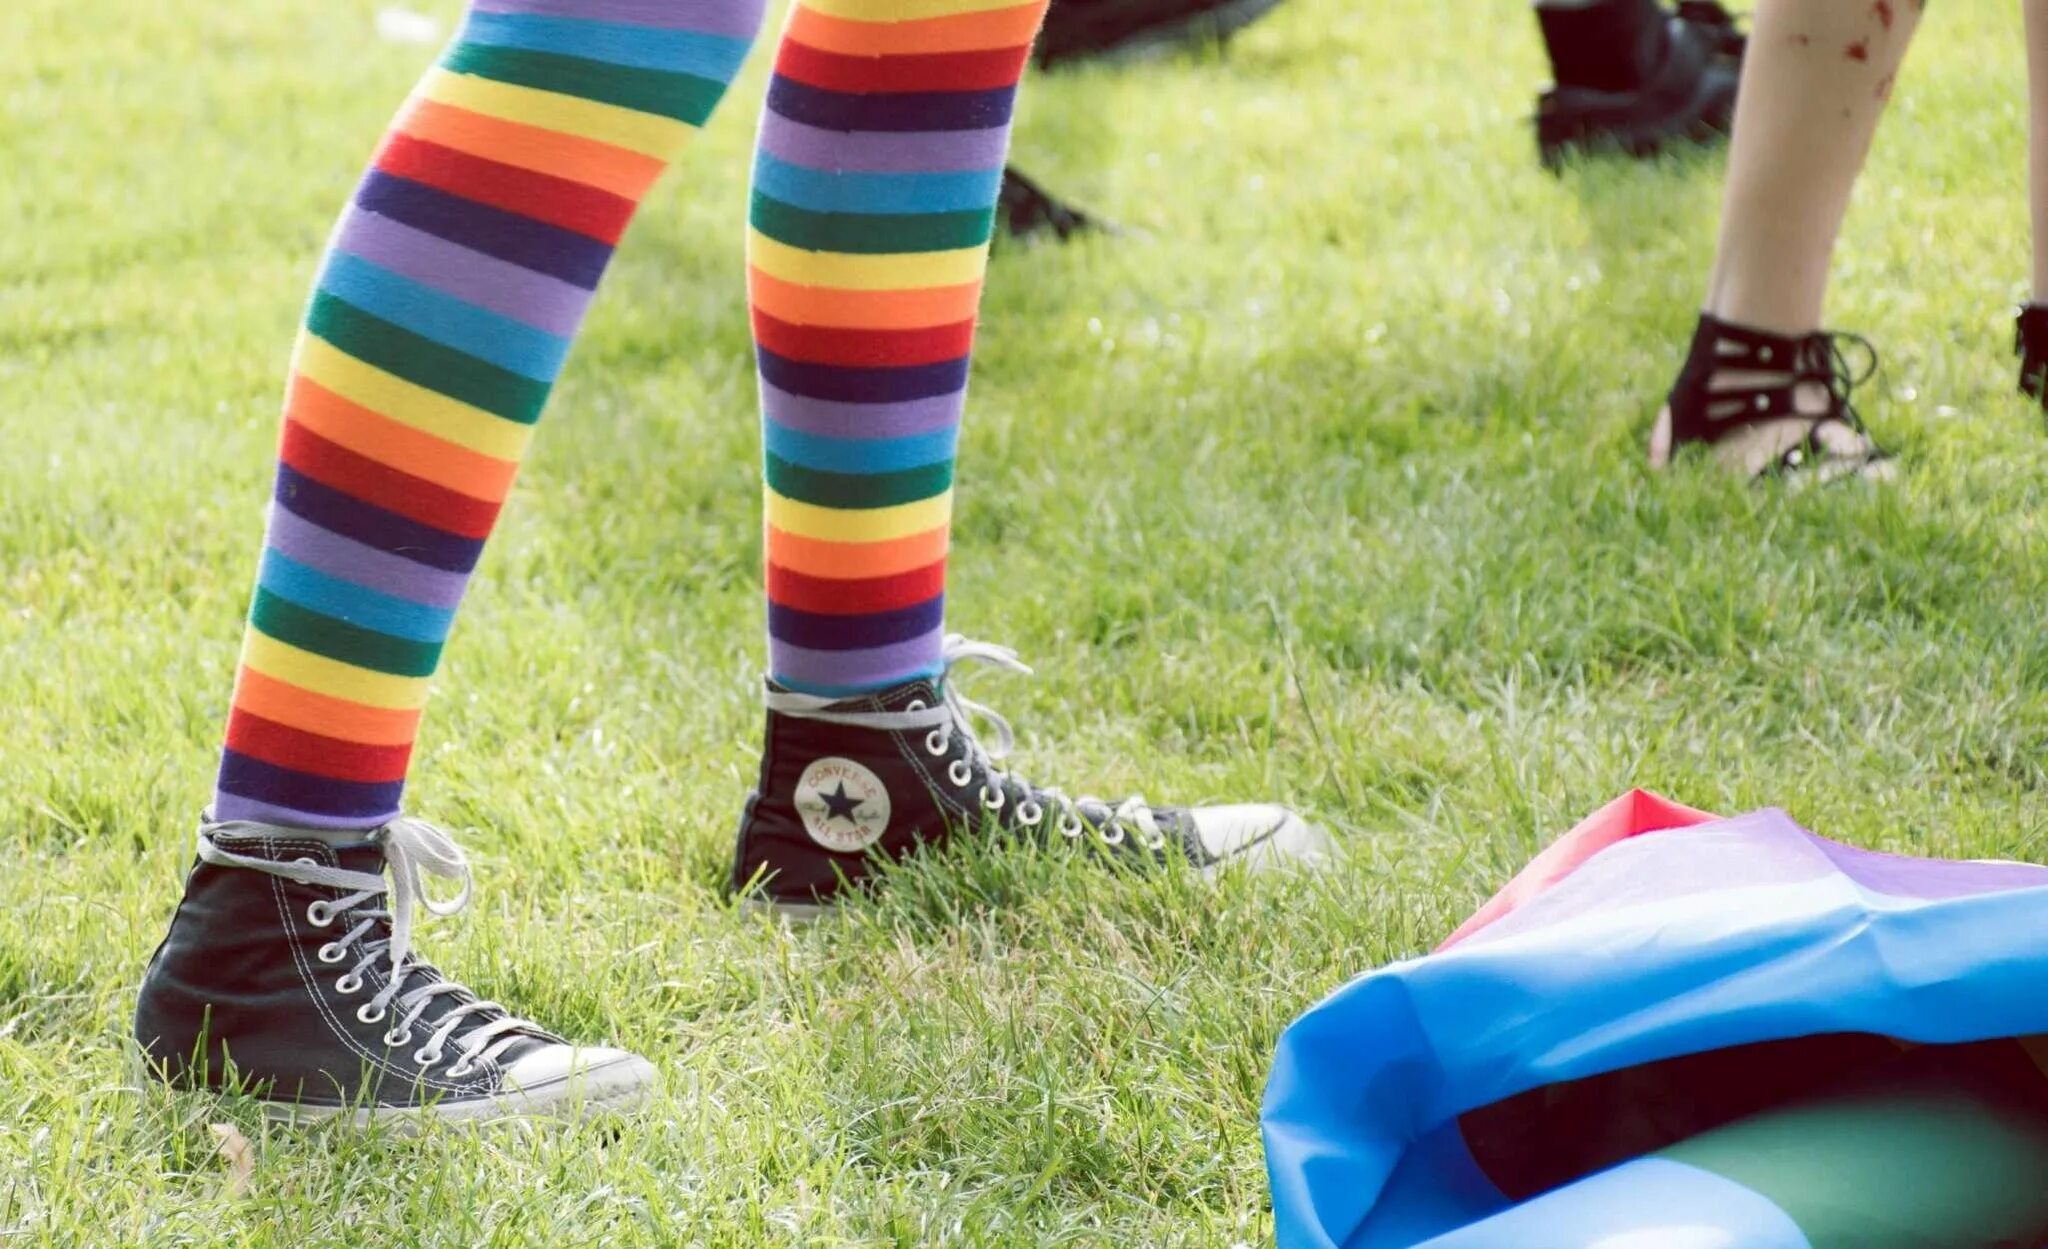 Ноги в радужных носках. Детские ноги в носках на траве. Волосатые ноги в радужных носках. Яркие ботинки на траве. Wearing socks